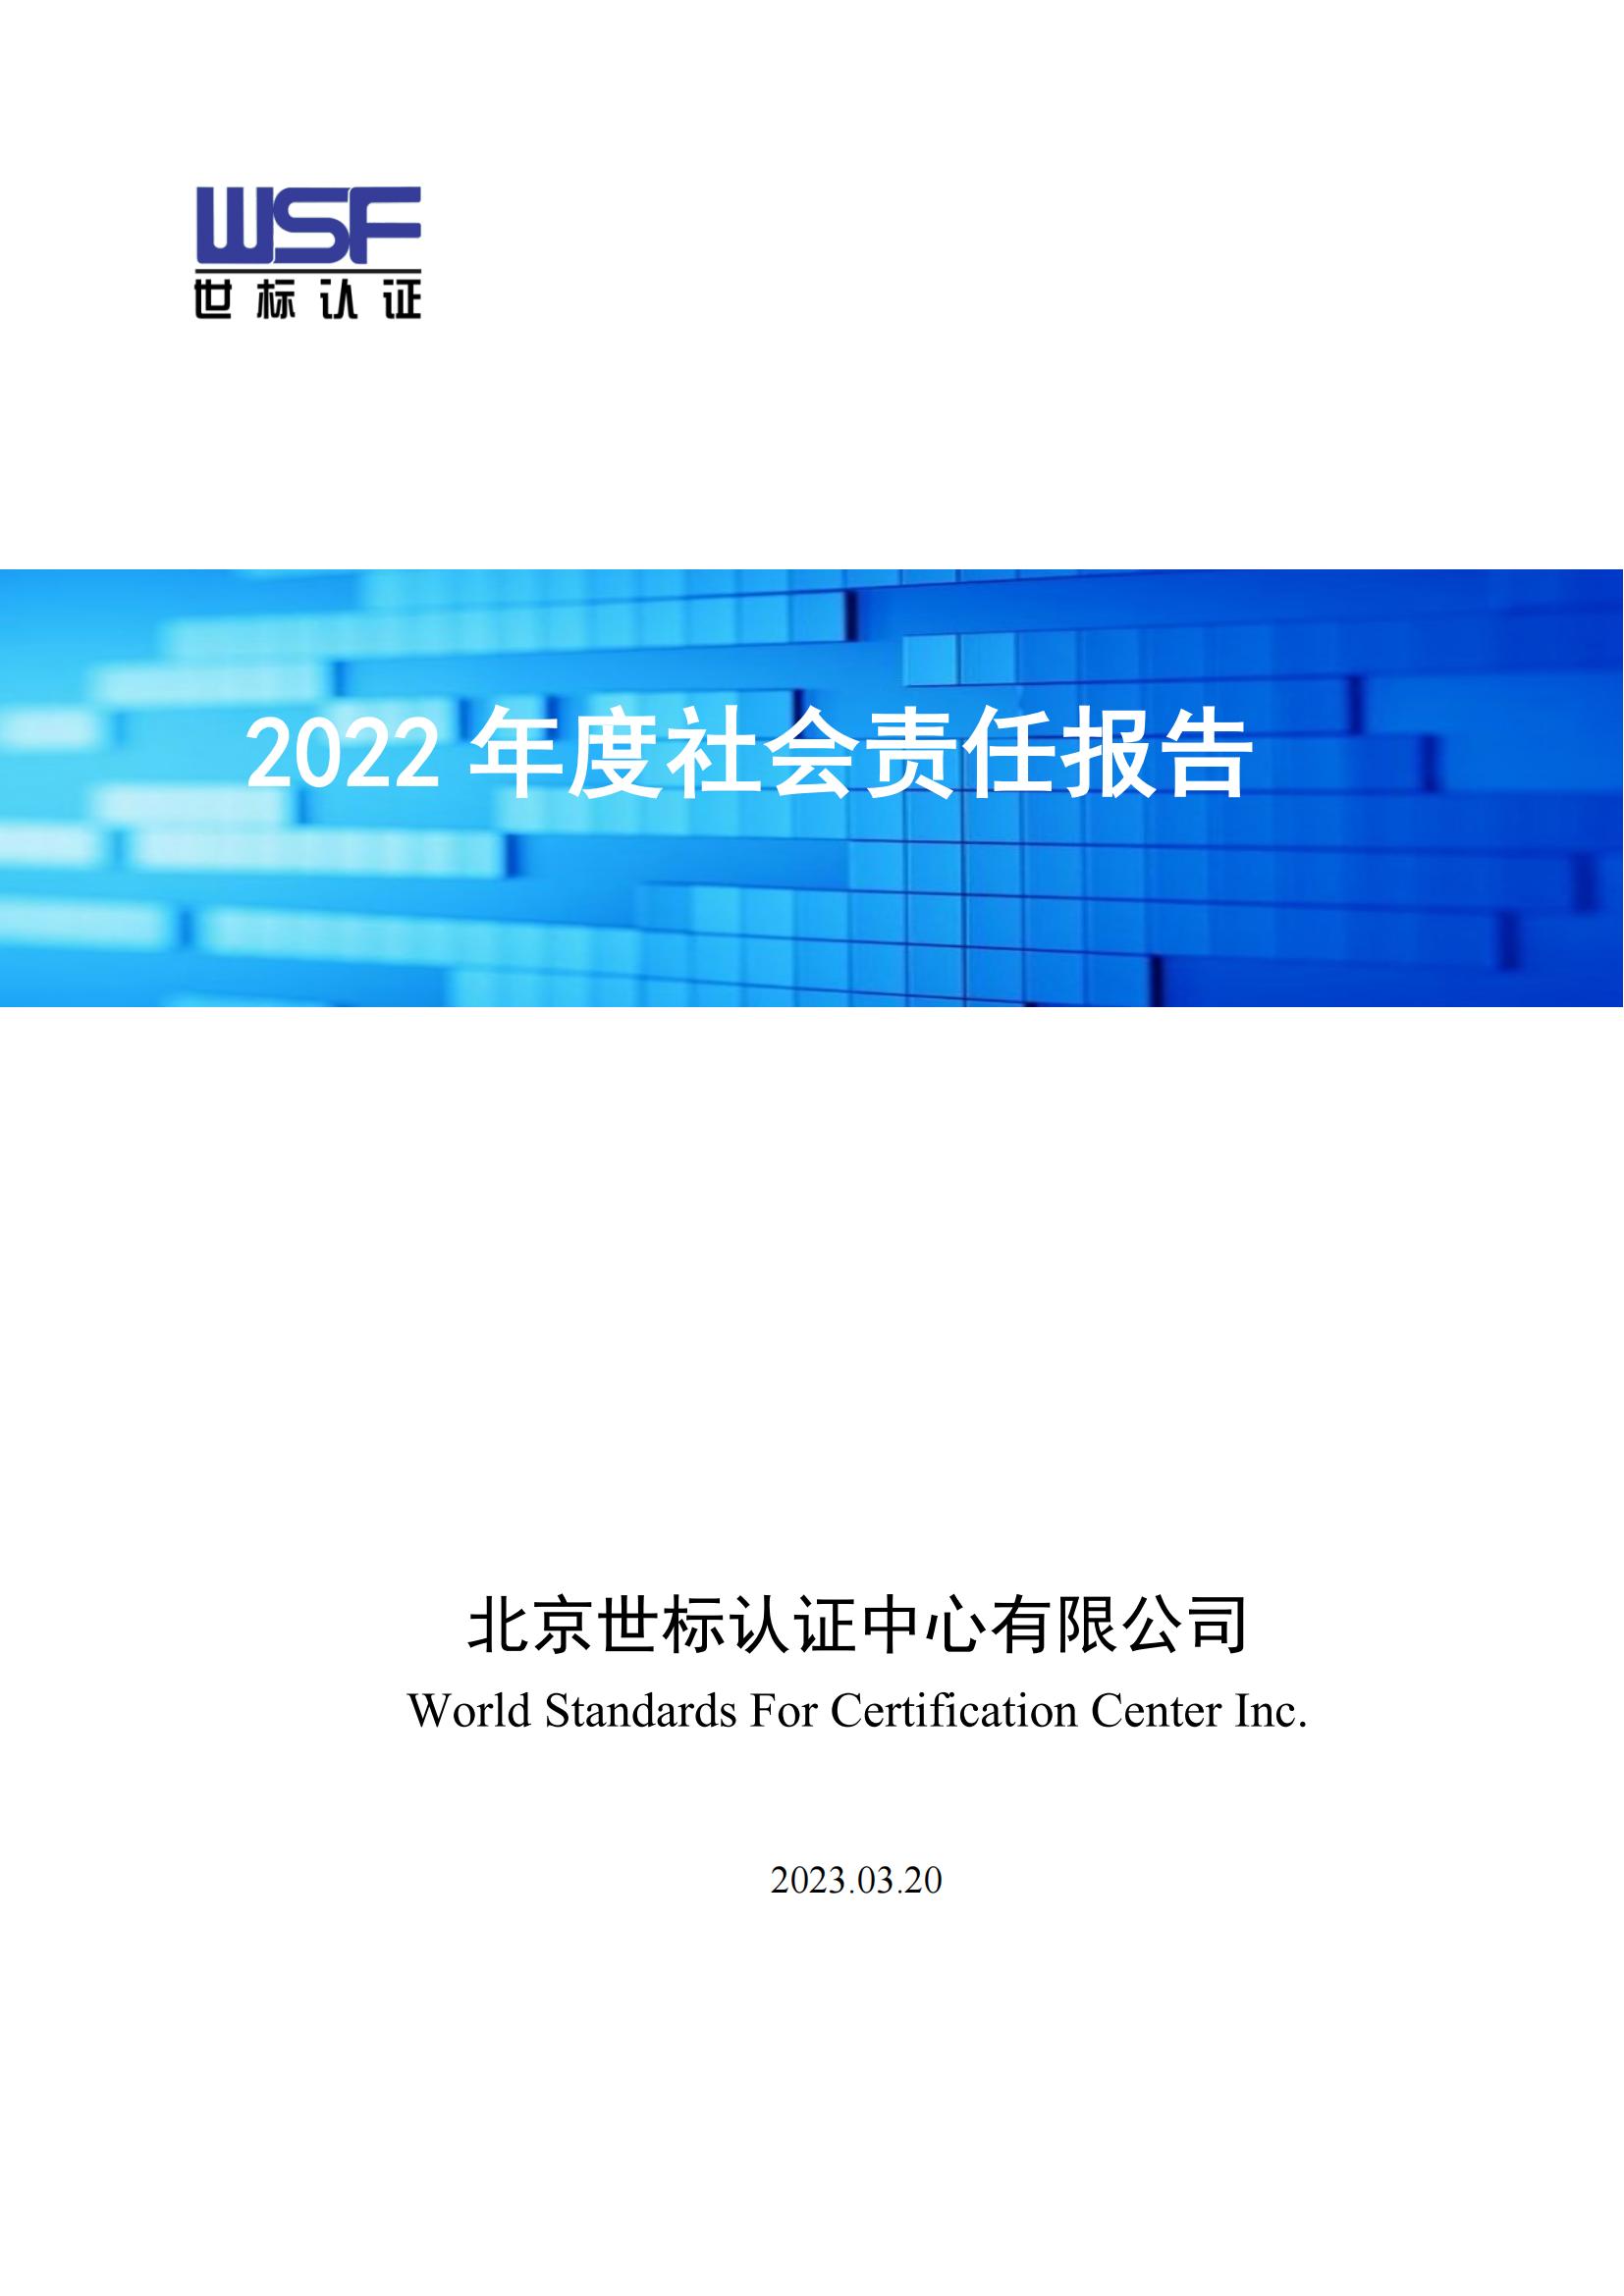 2022责任报告1.jpg